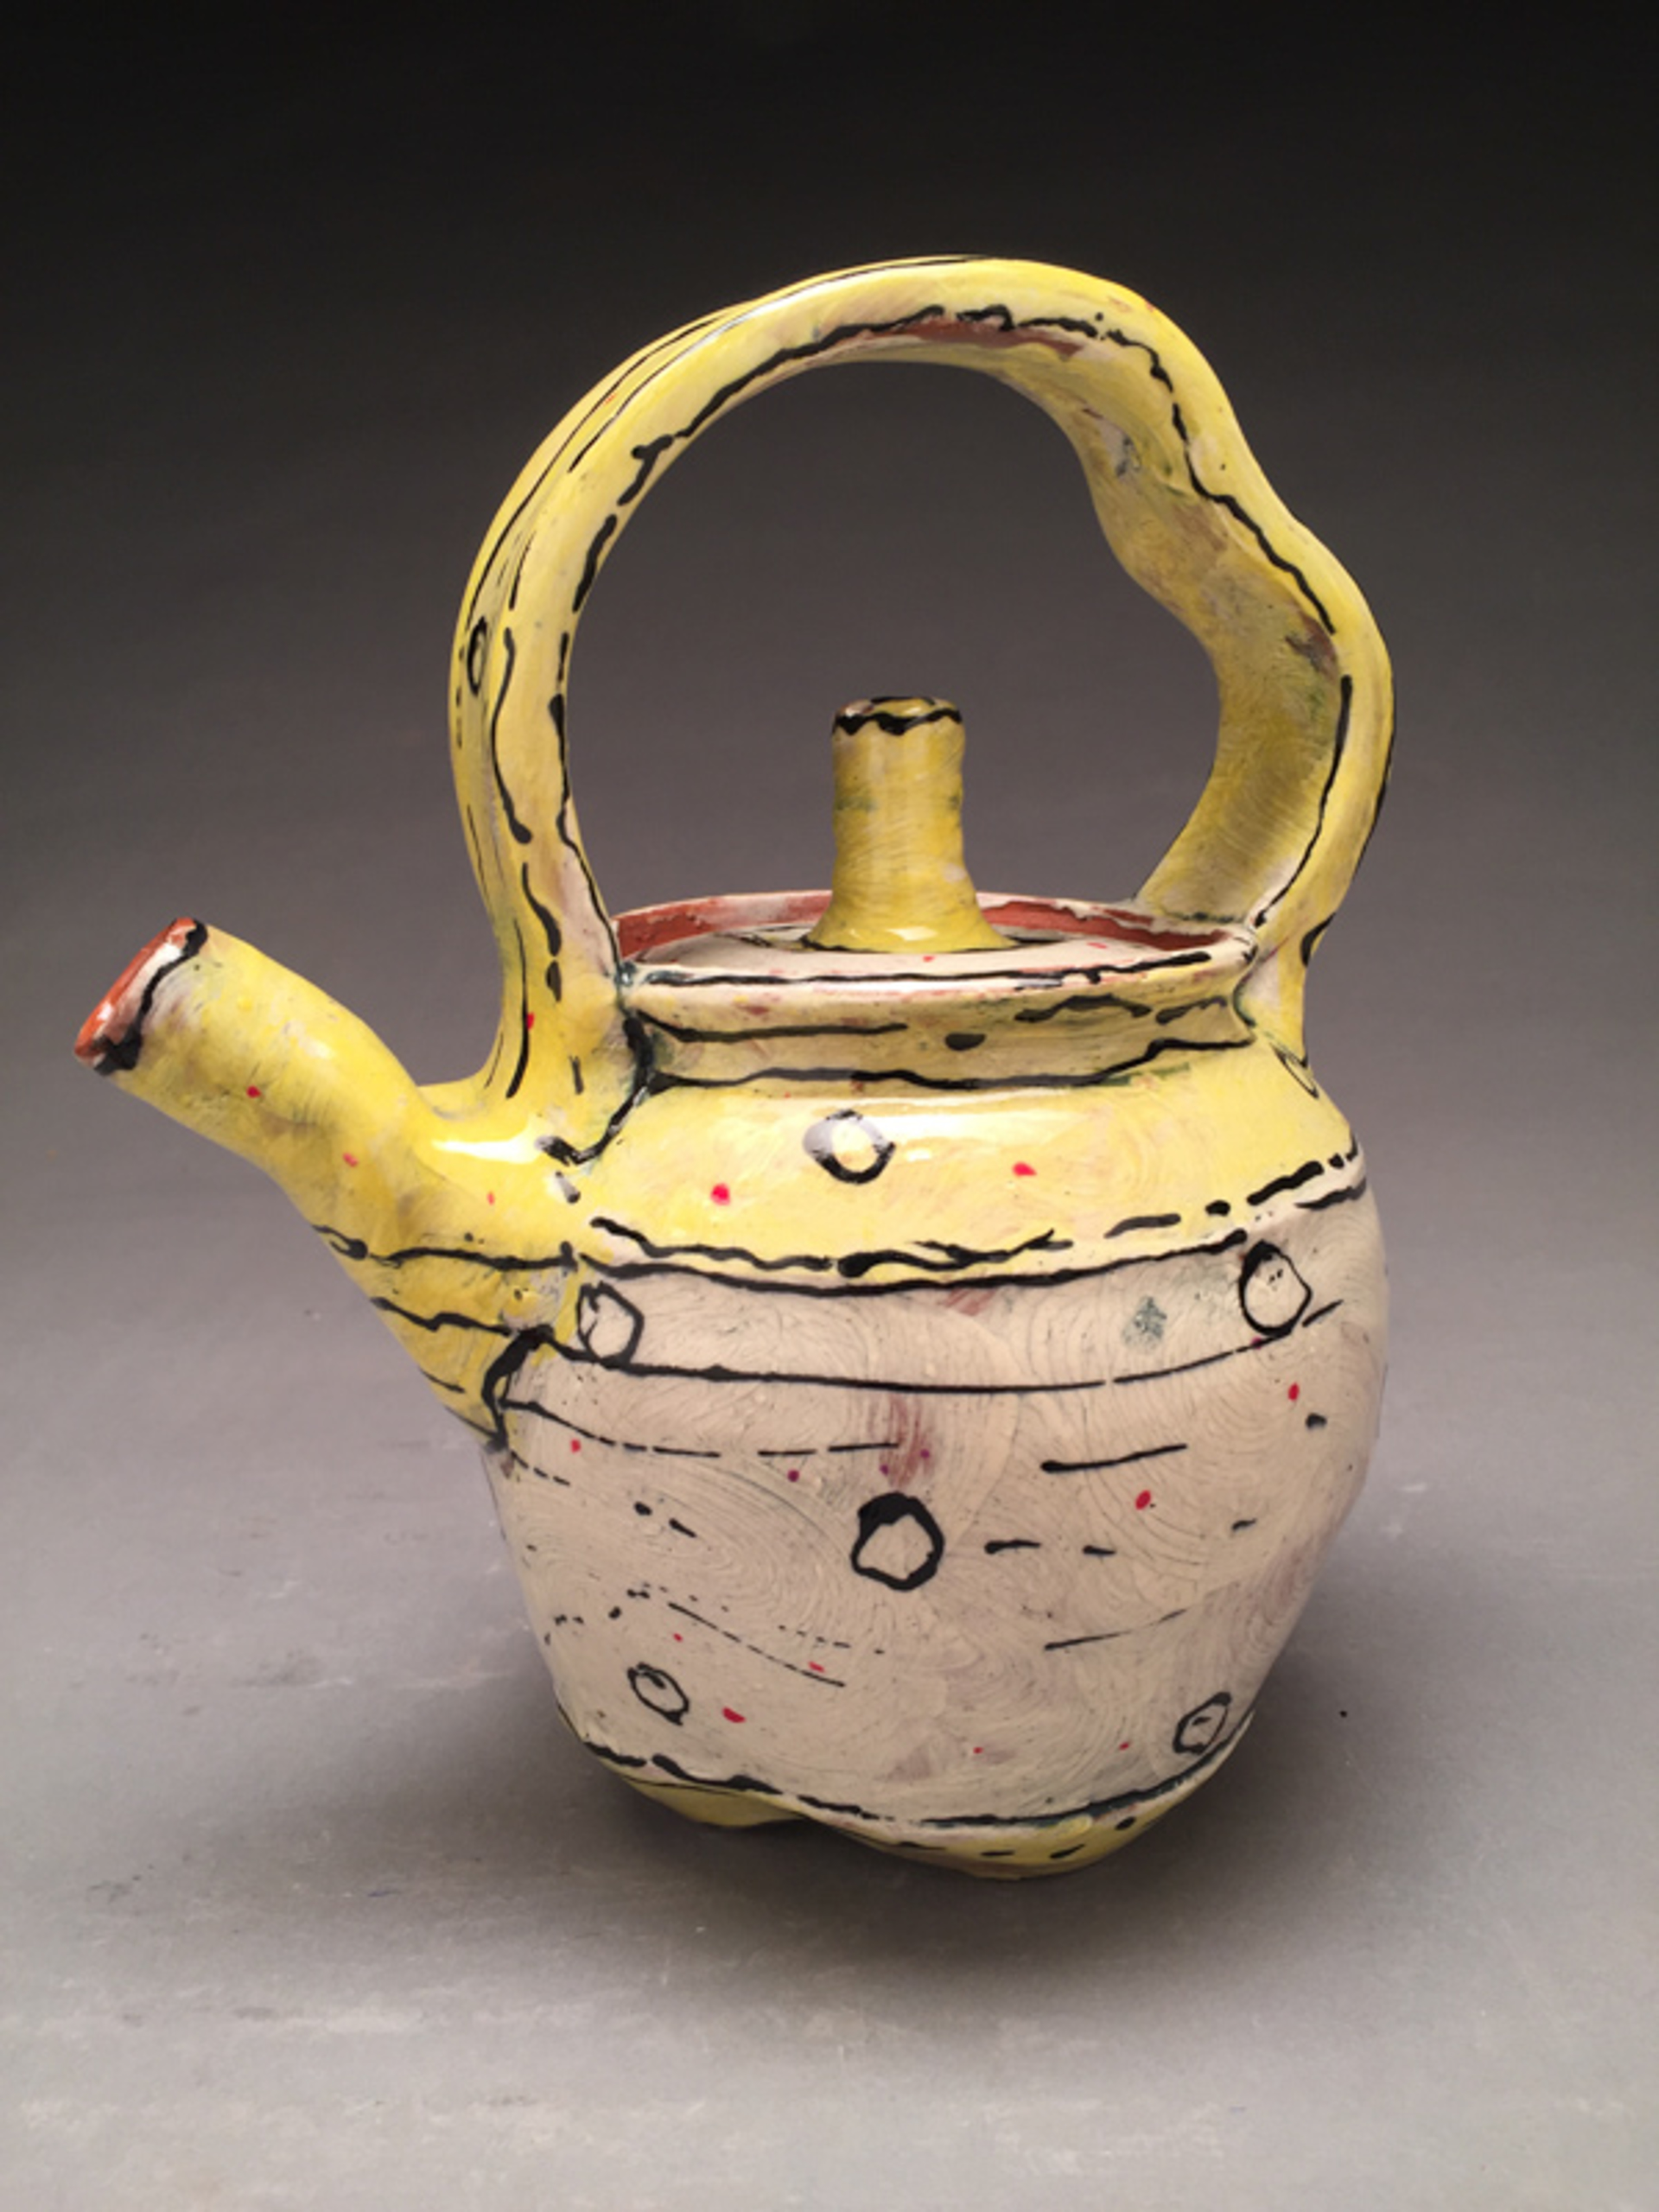 Teapot by Susan McGilvrey